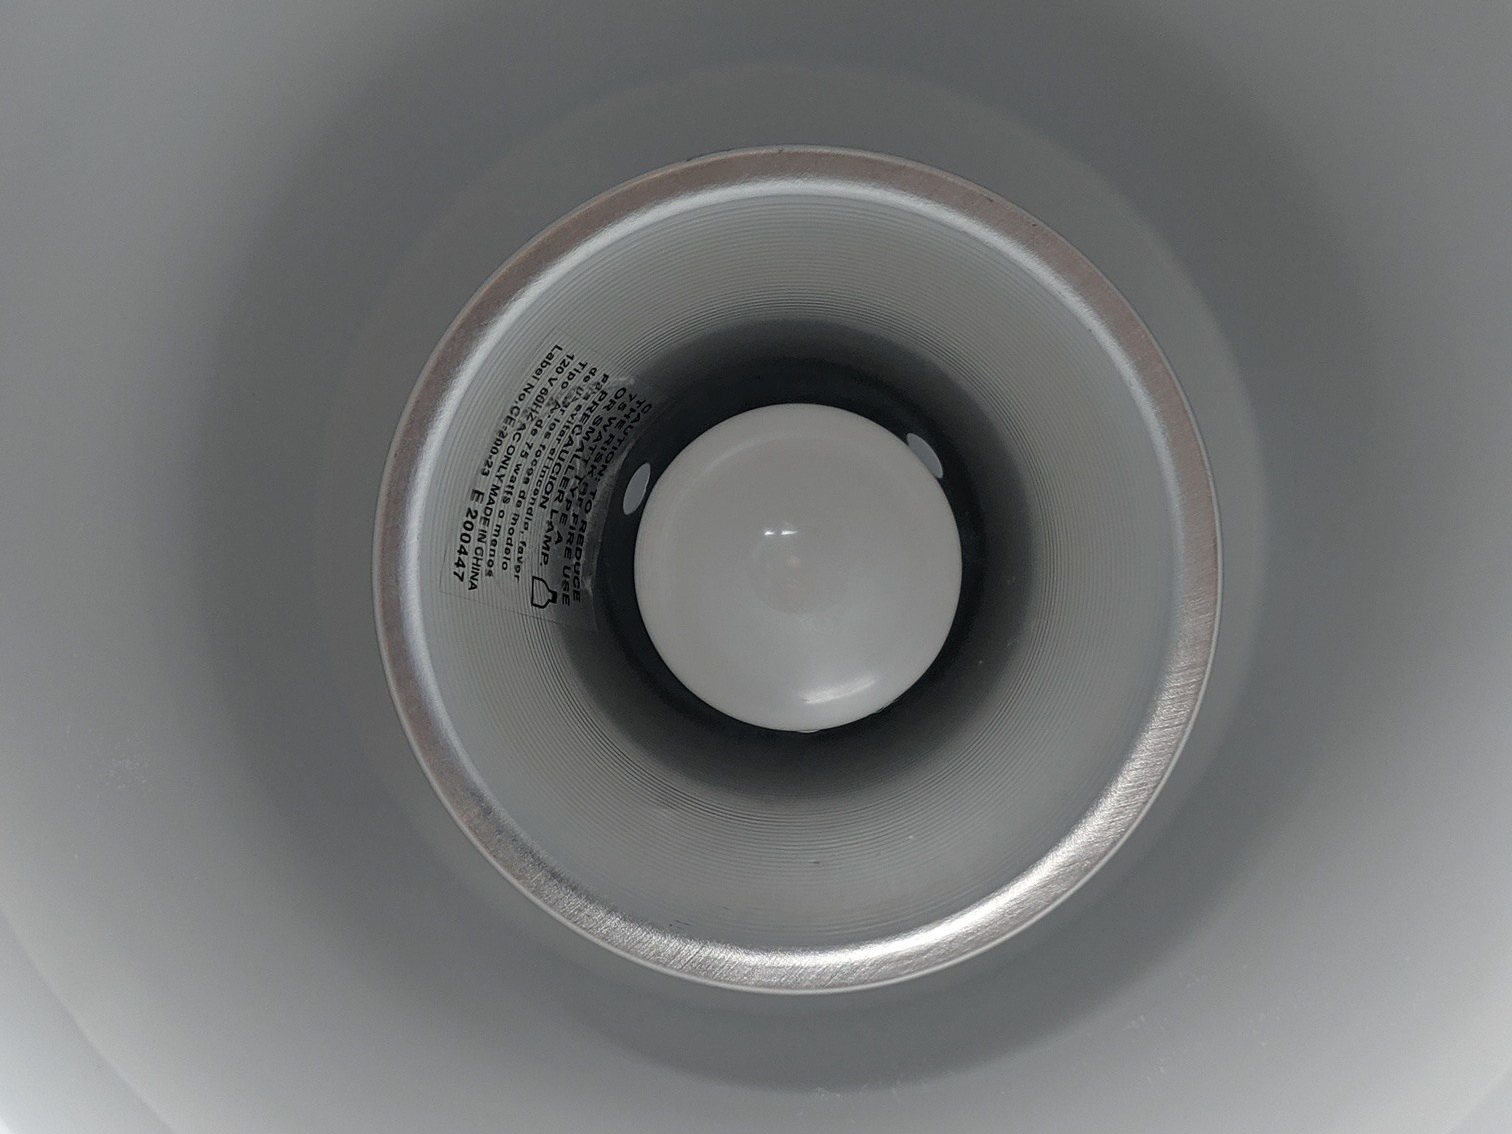 Inside of Bucket Light